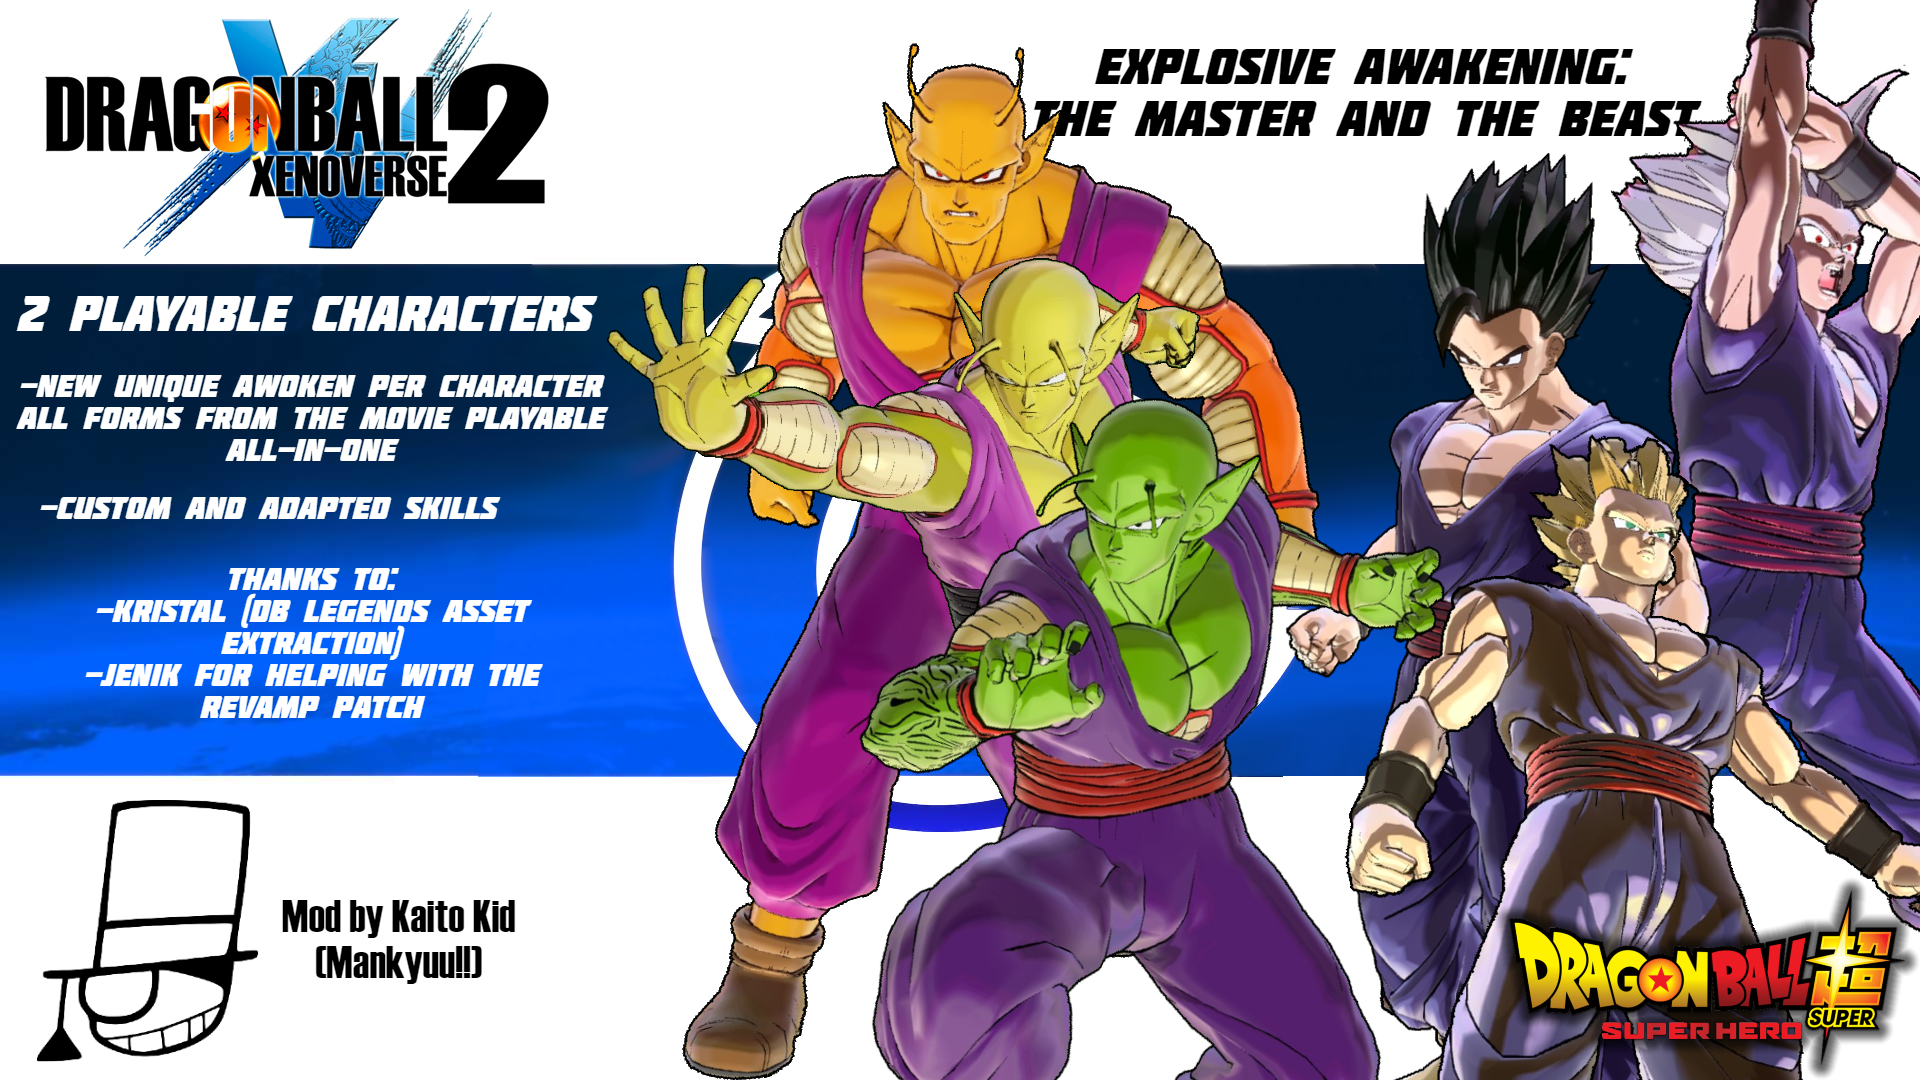 Explosive Awakening – The Master and The Beast (DBS Super Hero ModPack)